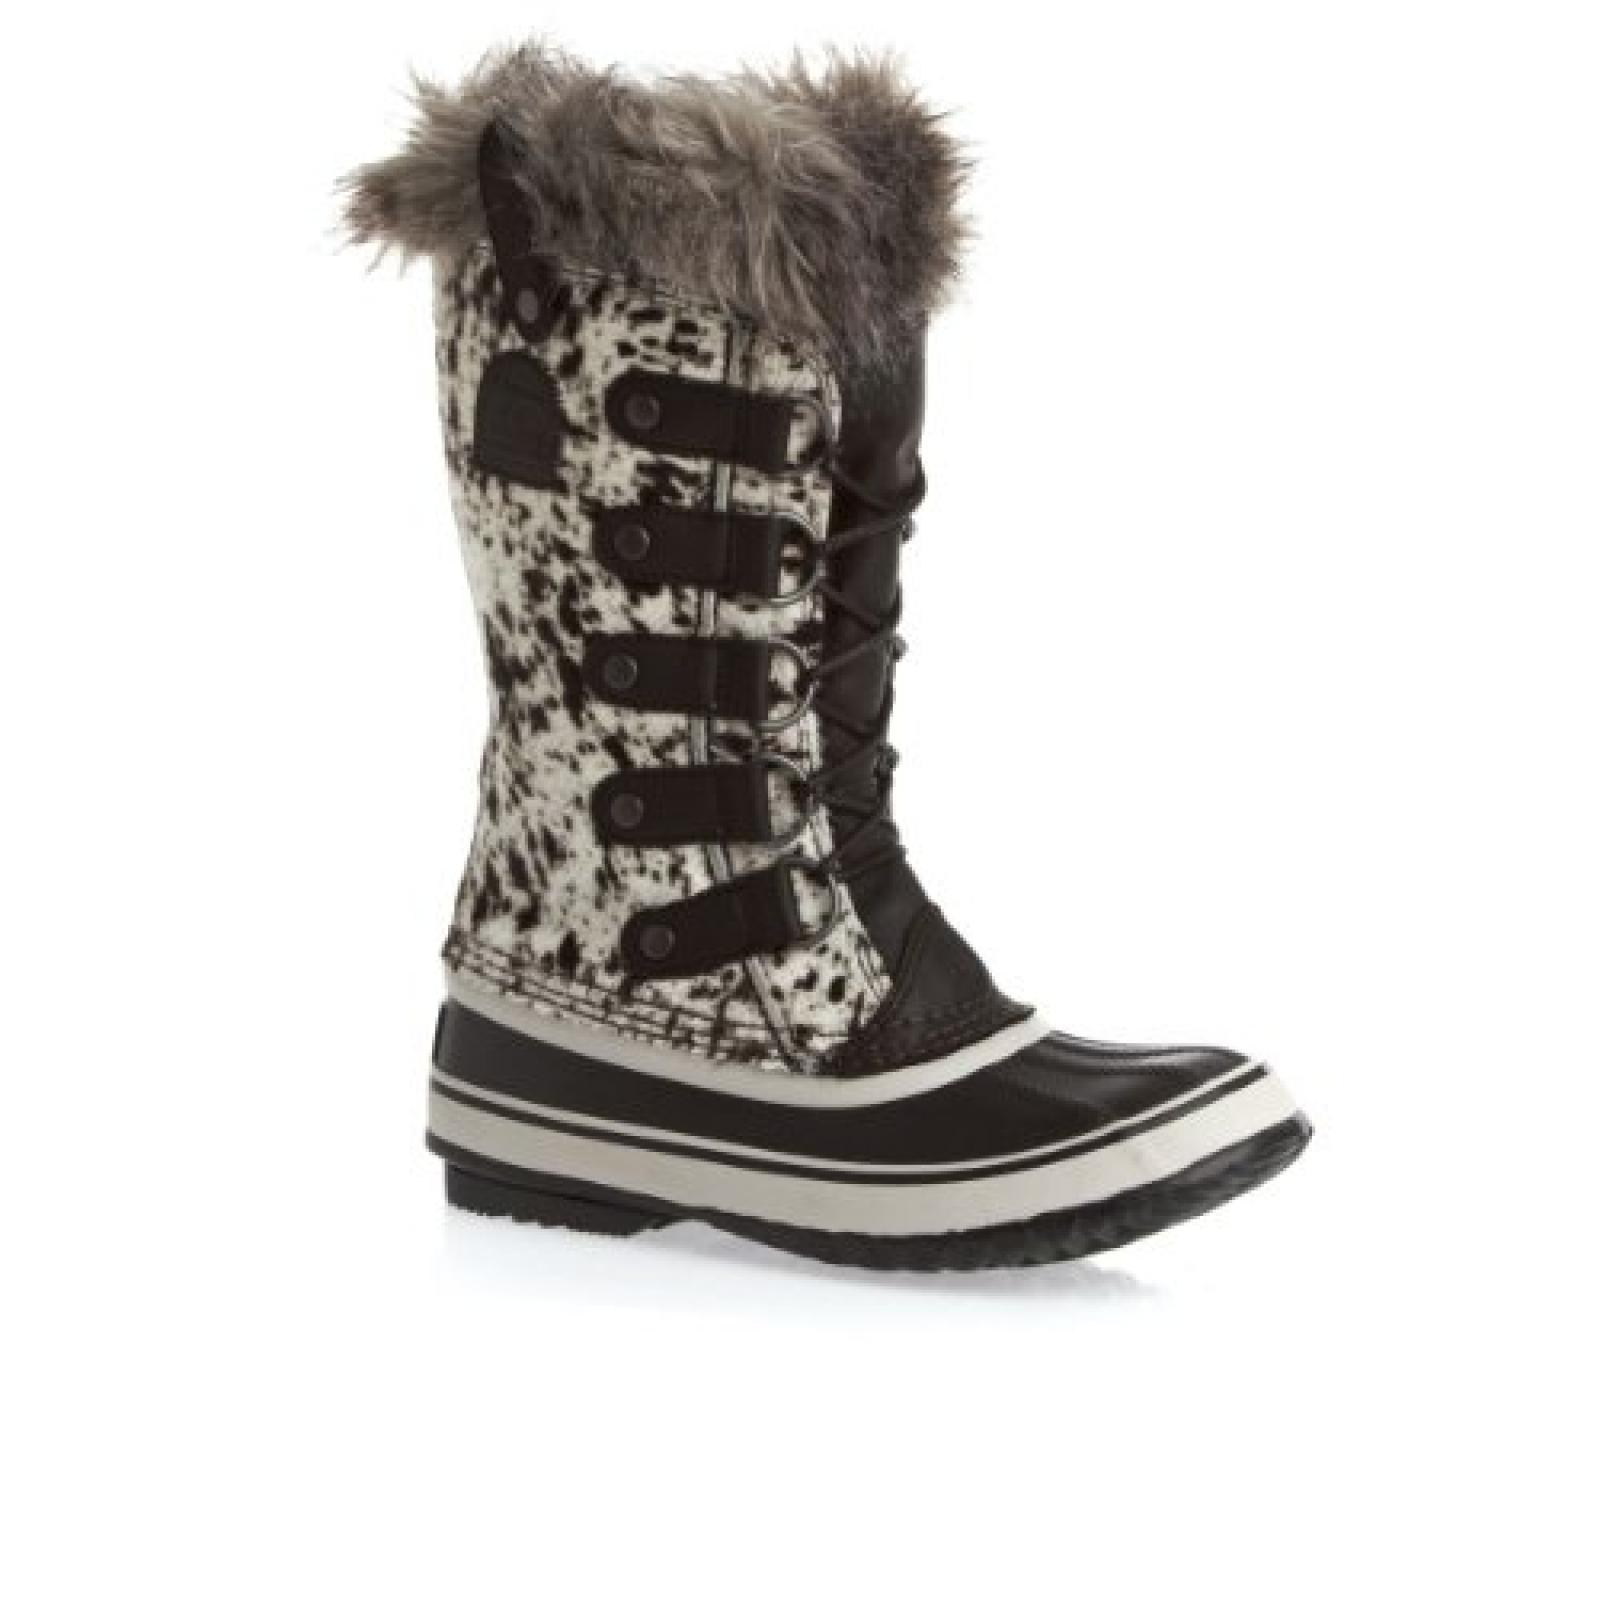 Sorel Joan Of Artic Reserve Boots - Black 